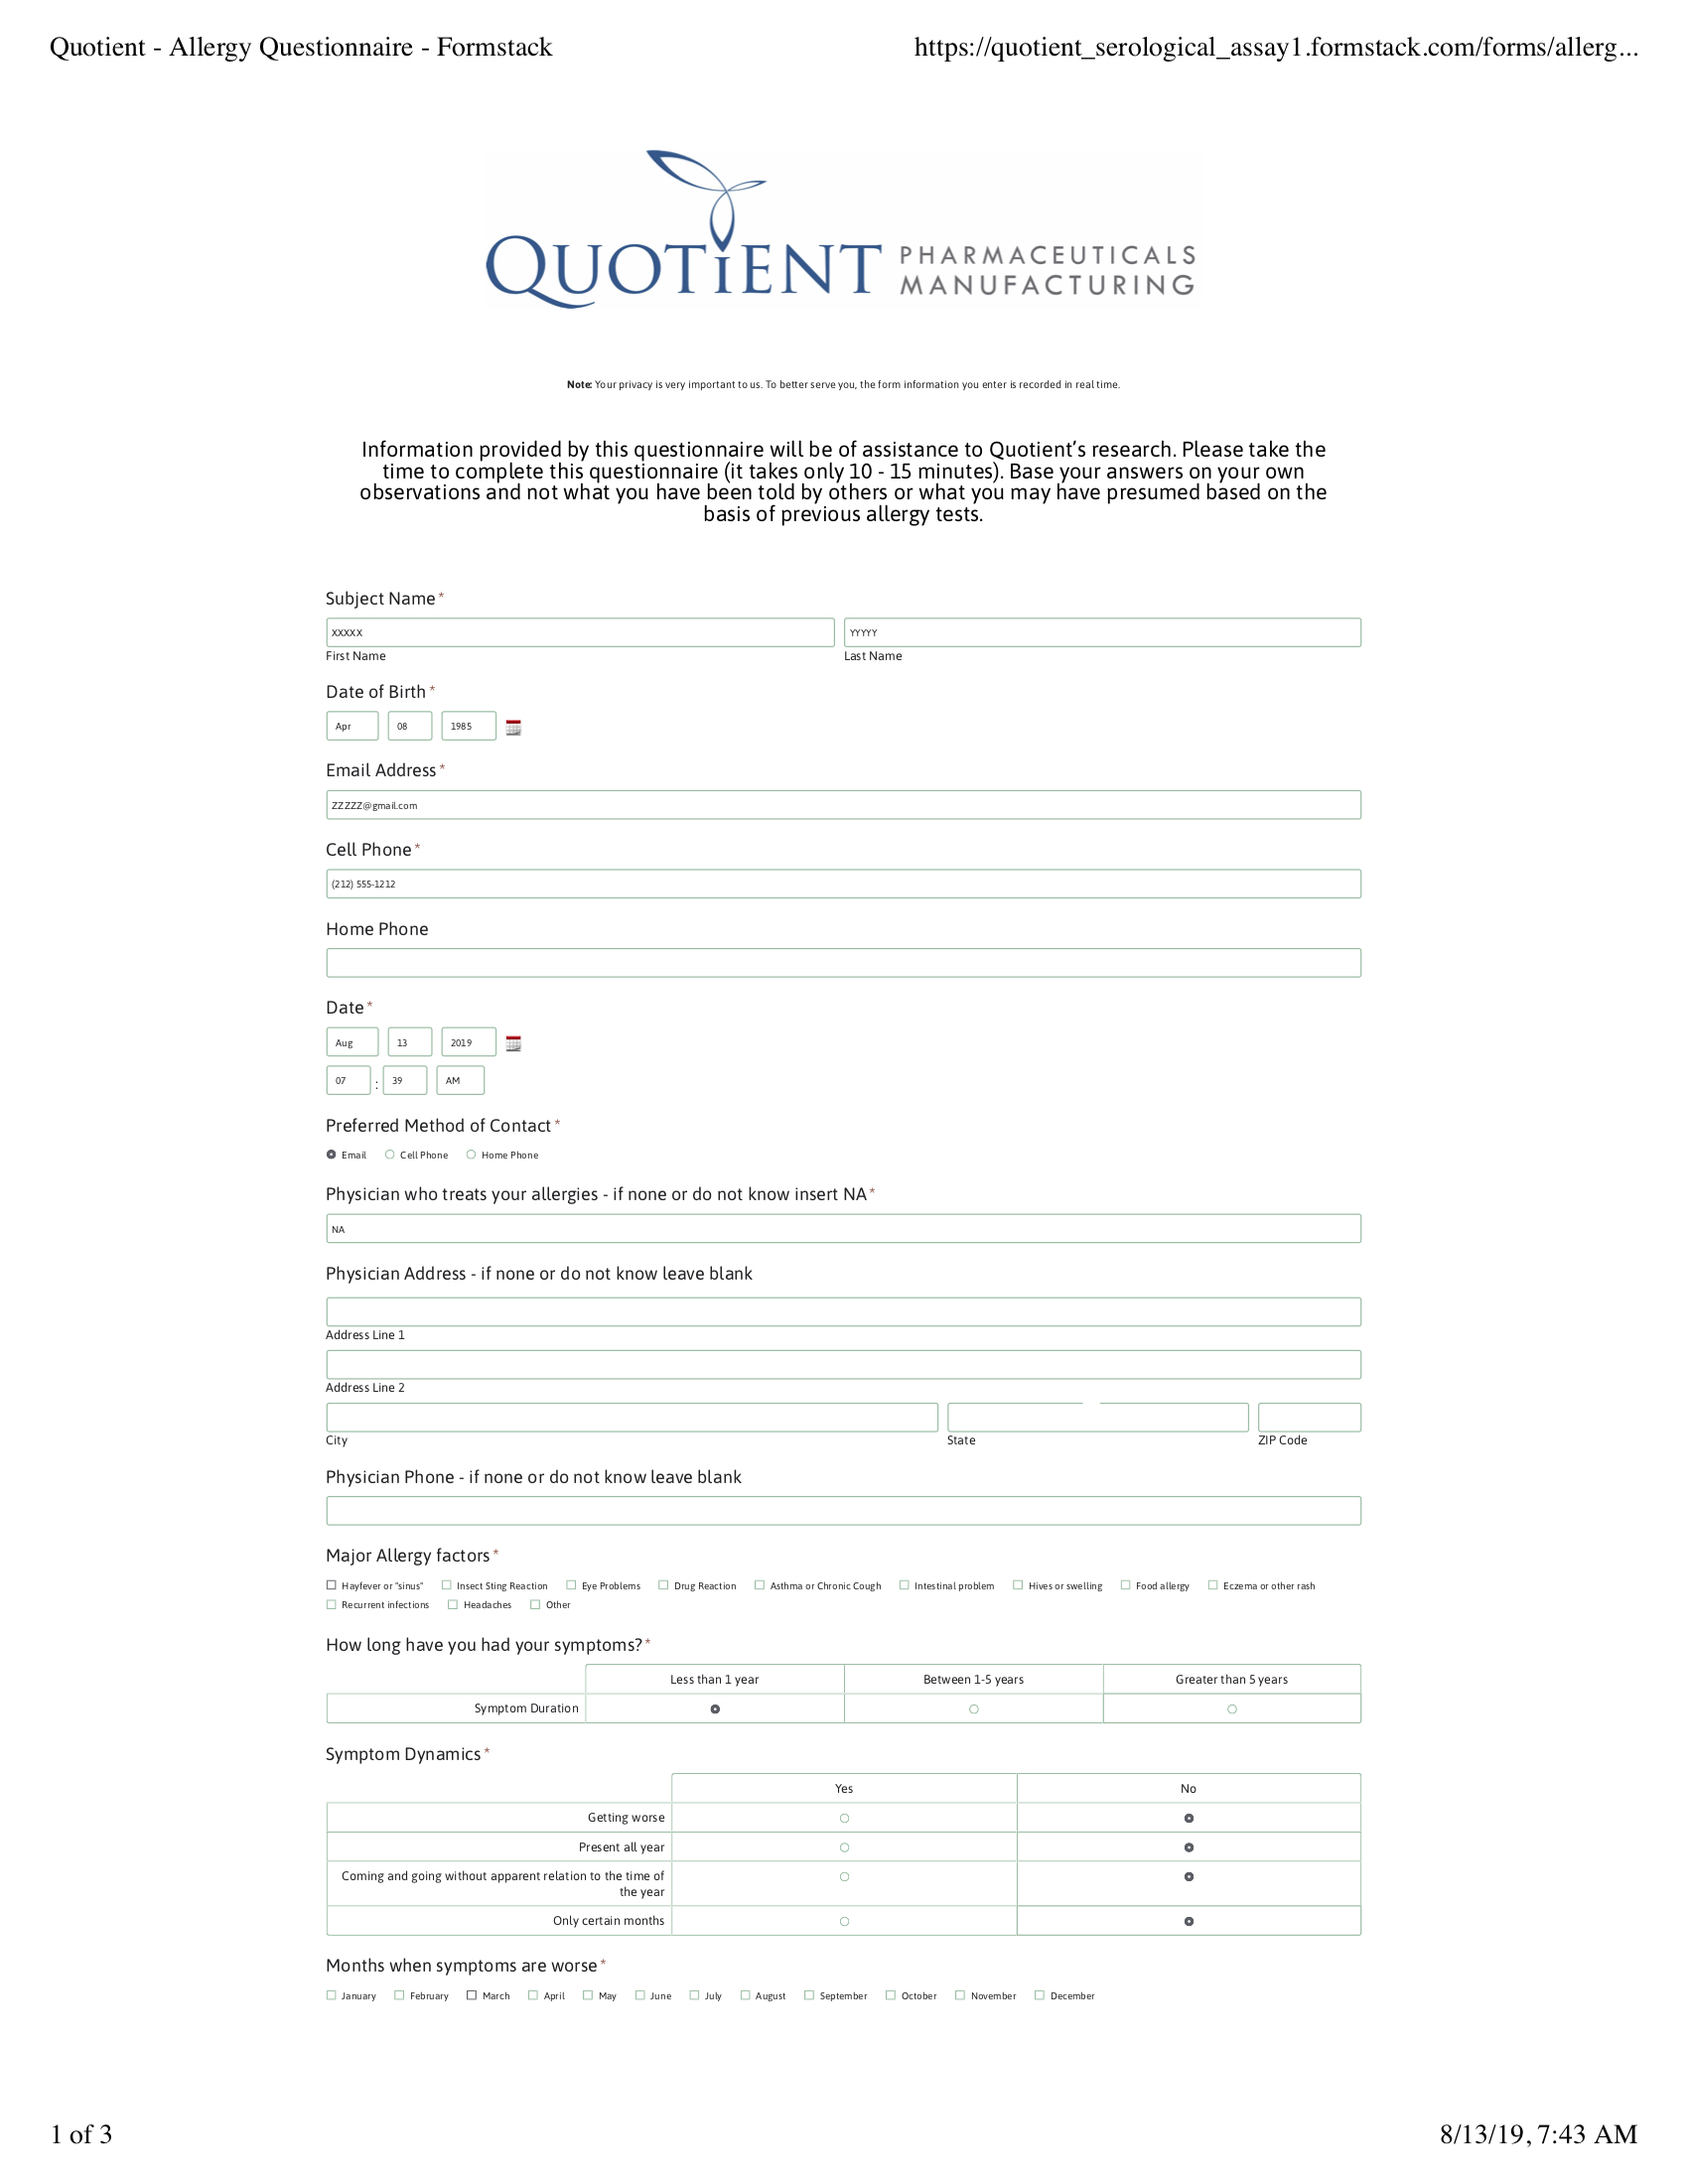 Quotient Allergy Questionnaire